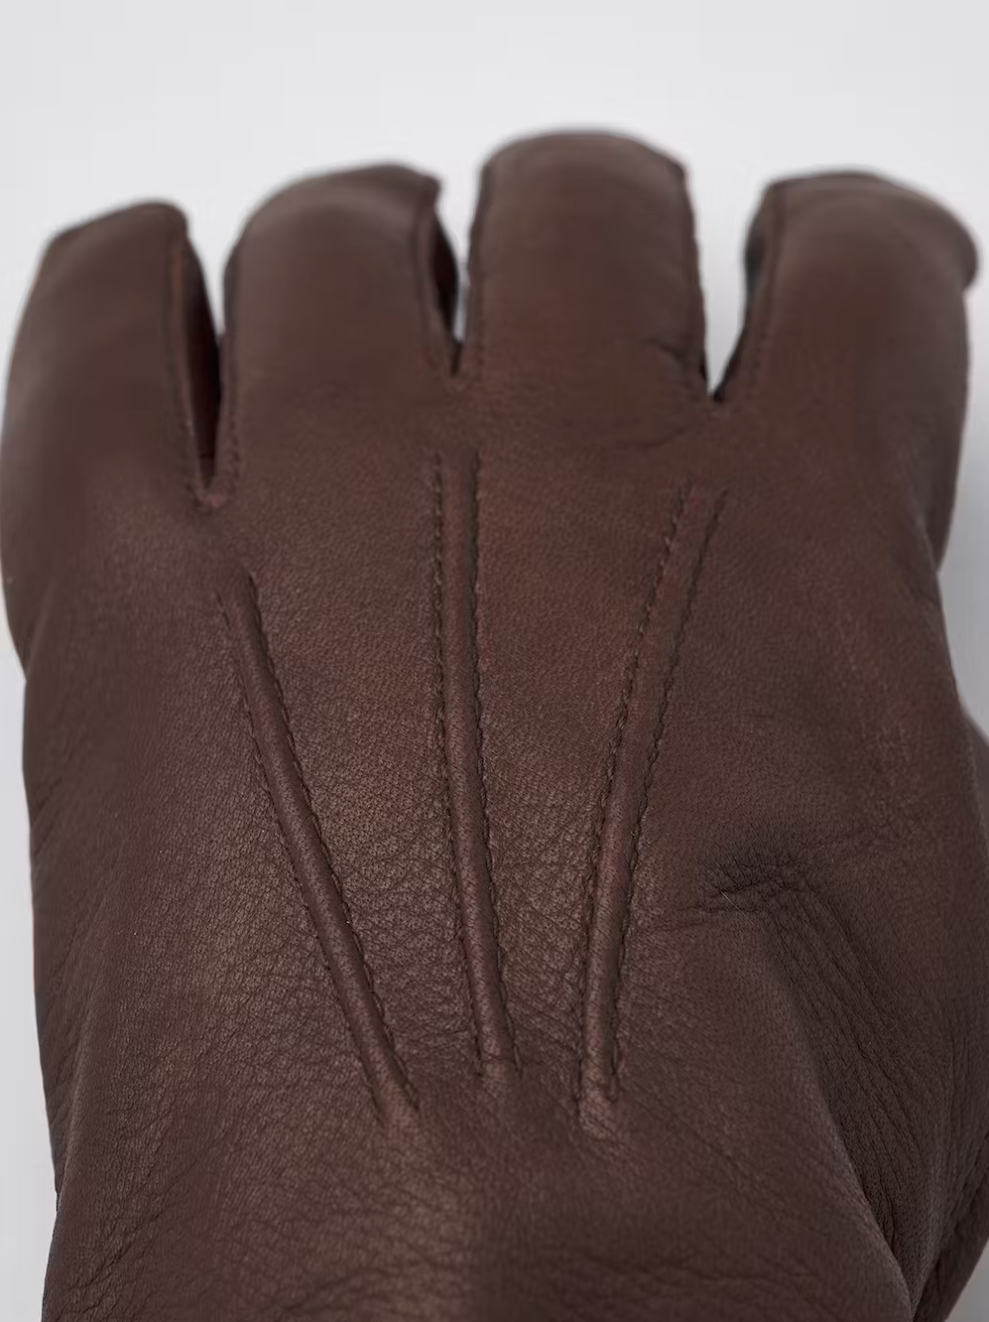 Andrew Deerskin Gloves Chocolate